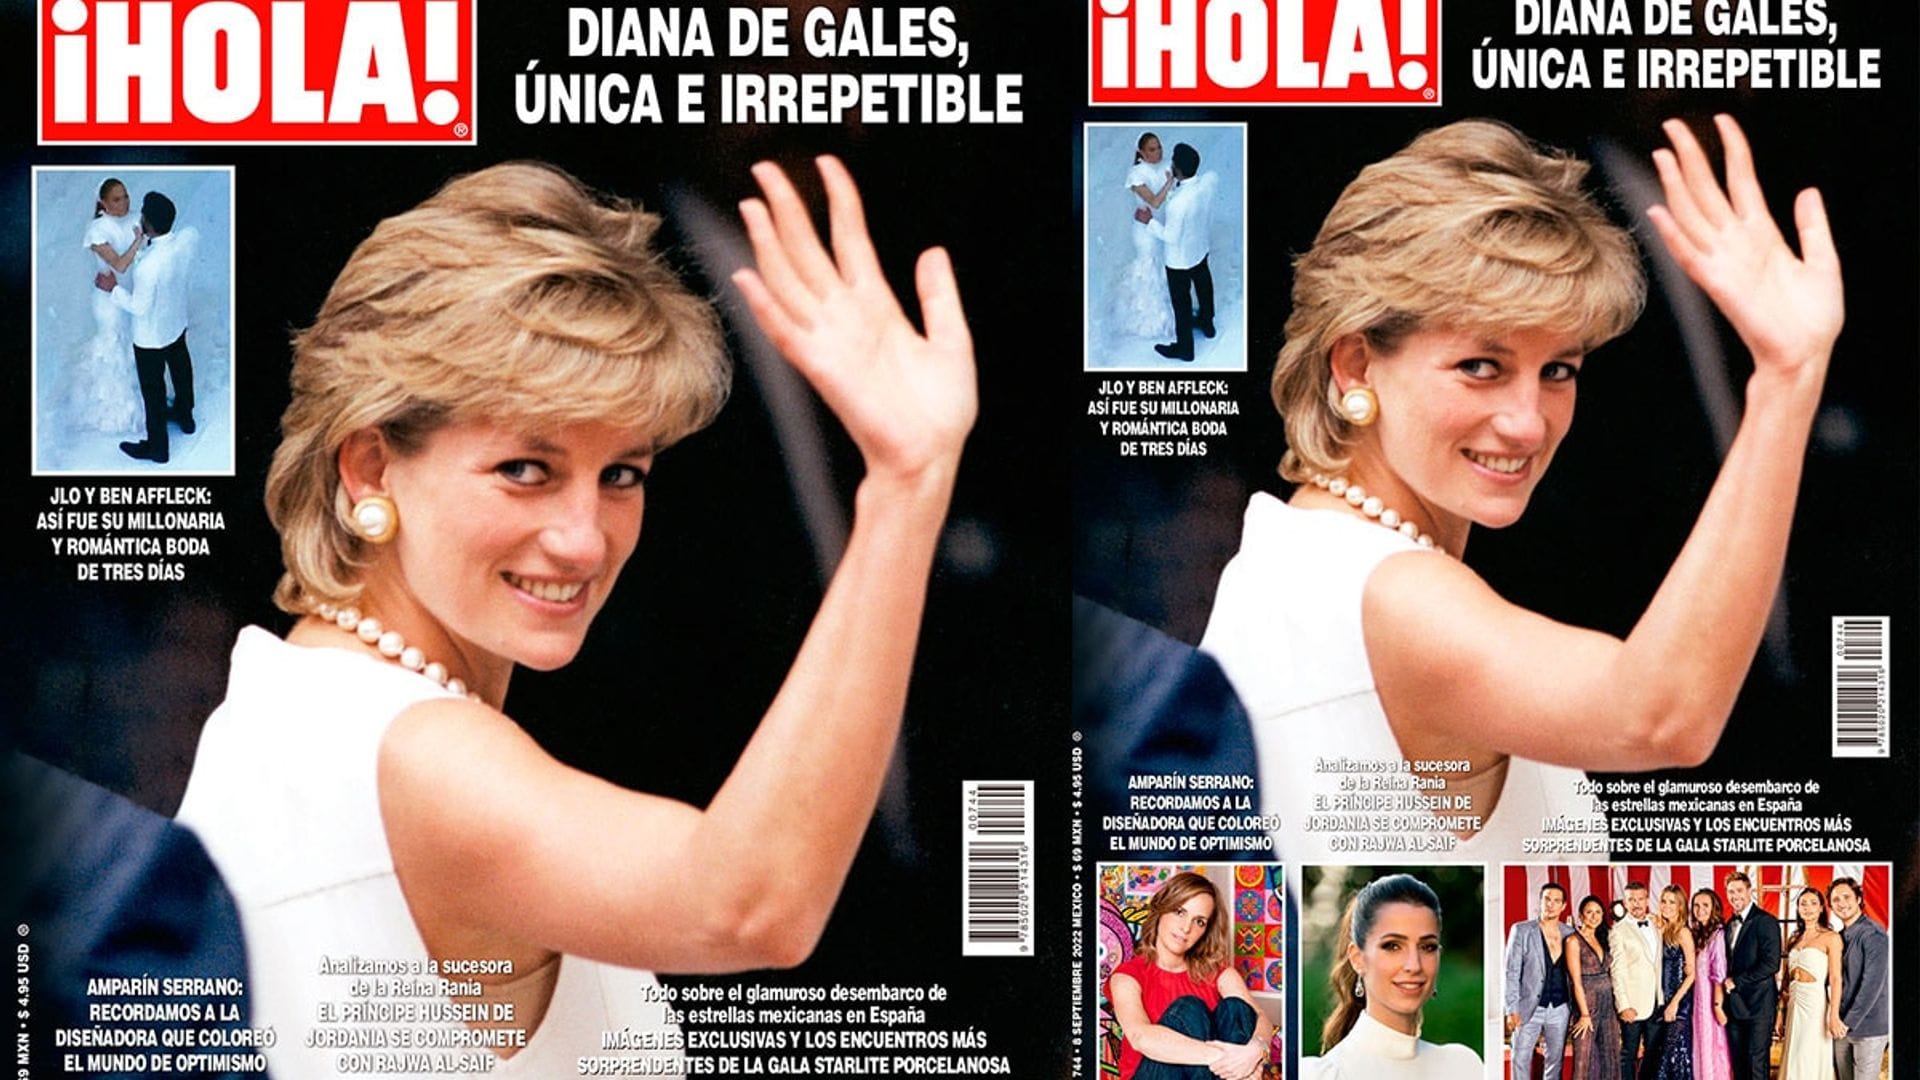 En ¡HOLA!, Diana de Gales, única e irrepetible